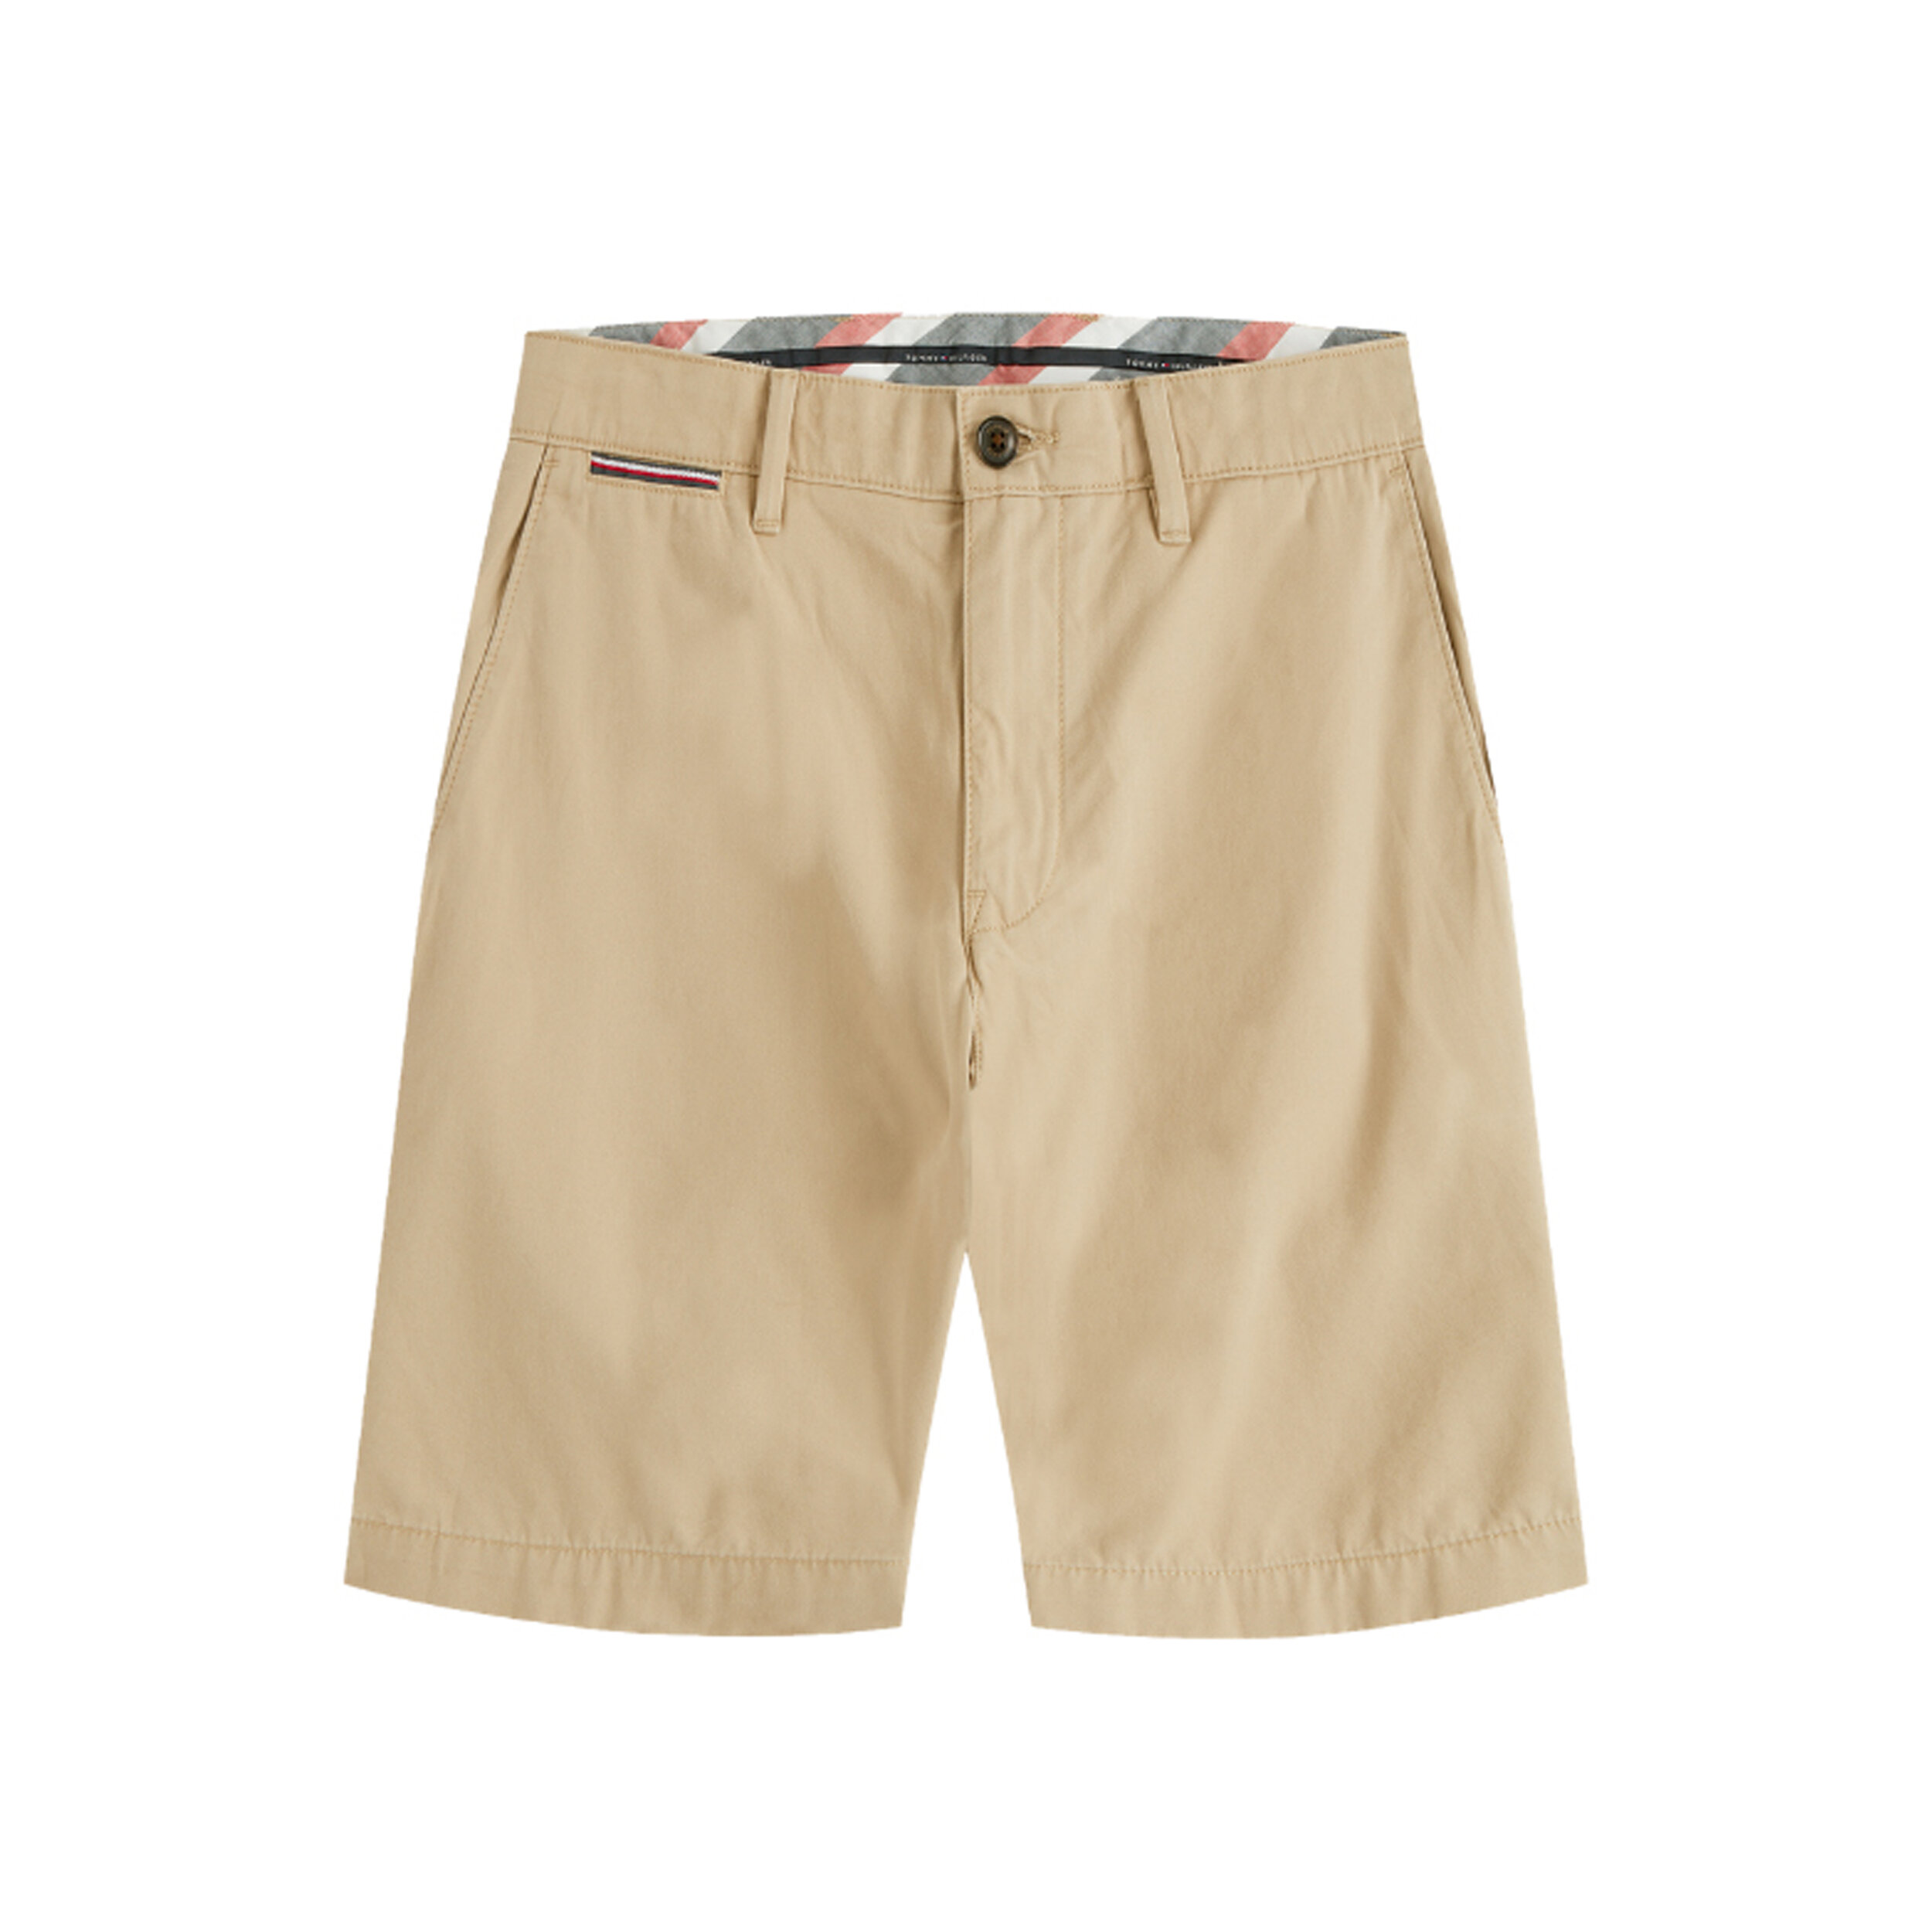  Brooklyn Shorts, Tommy Hilfiger - P5,650 